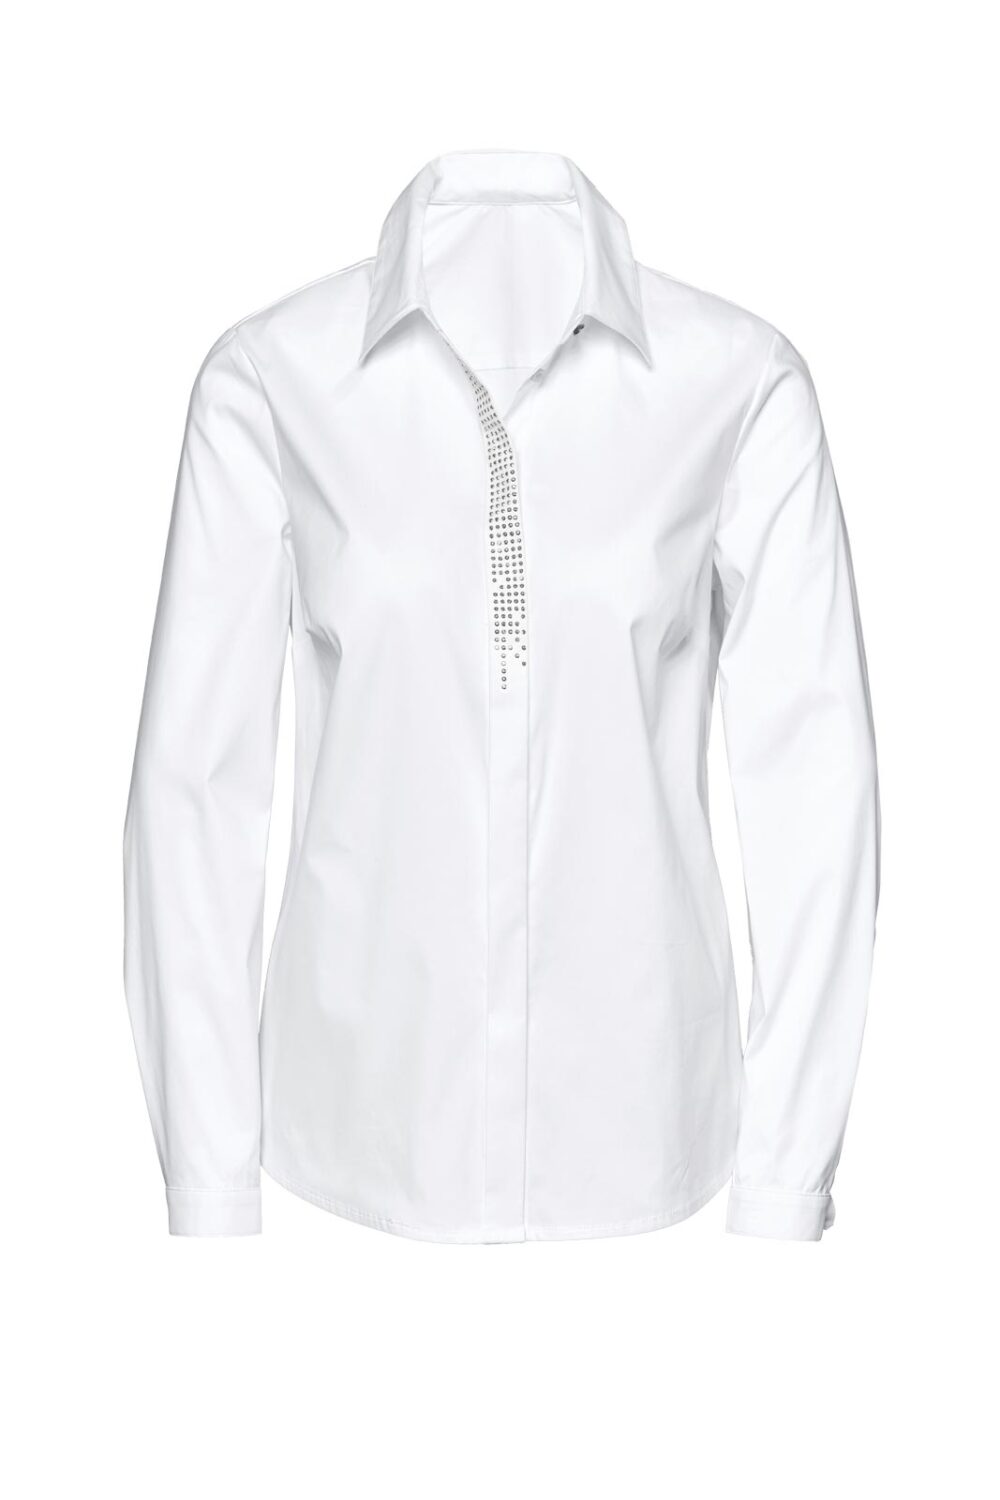 Création L Premium Damen Bluse mit Verzierung Hemd Tunika weiß 722.693 Missforty